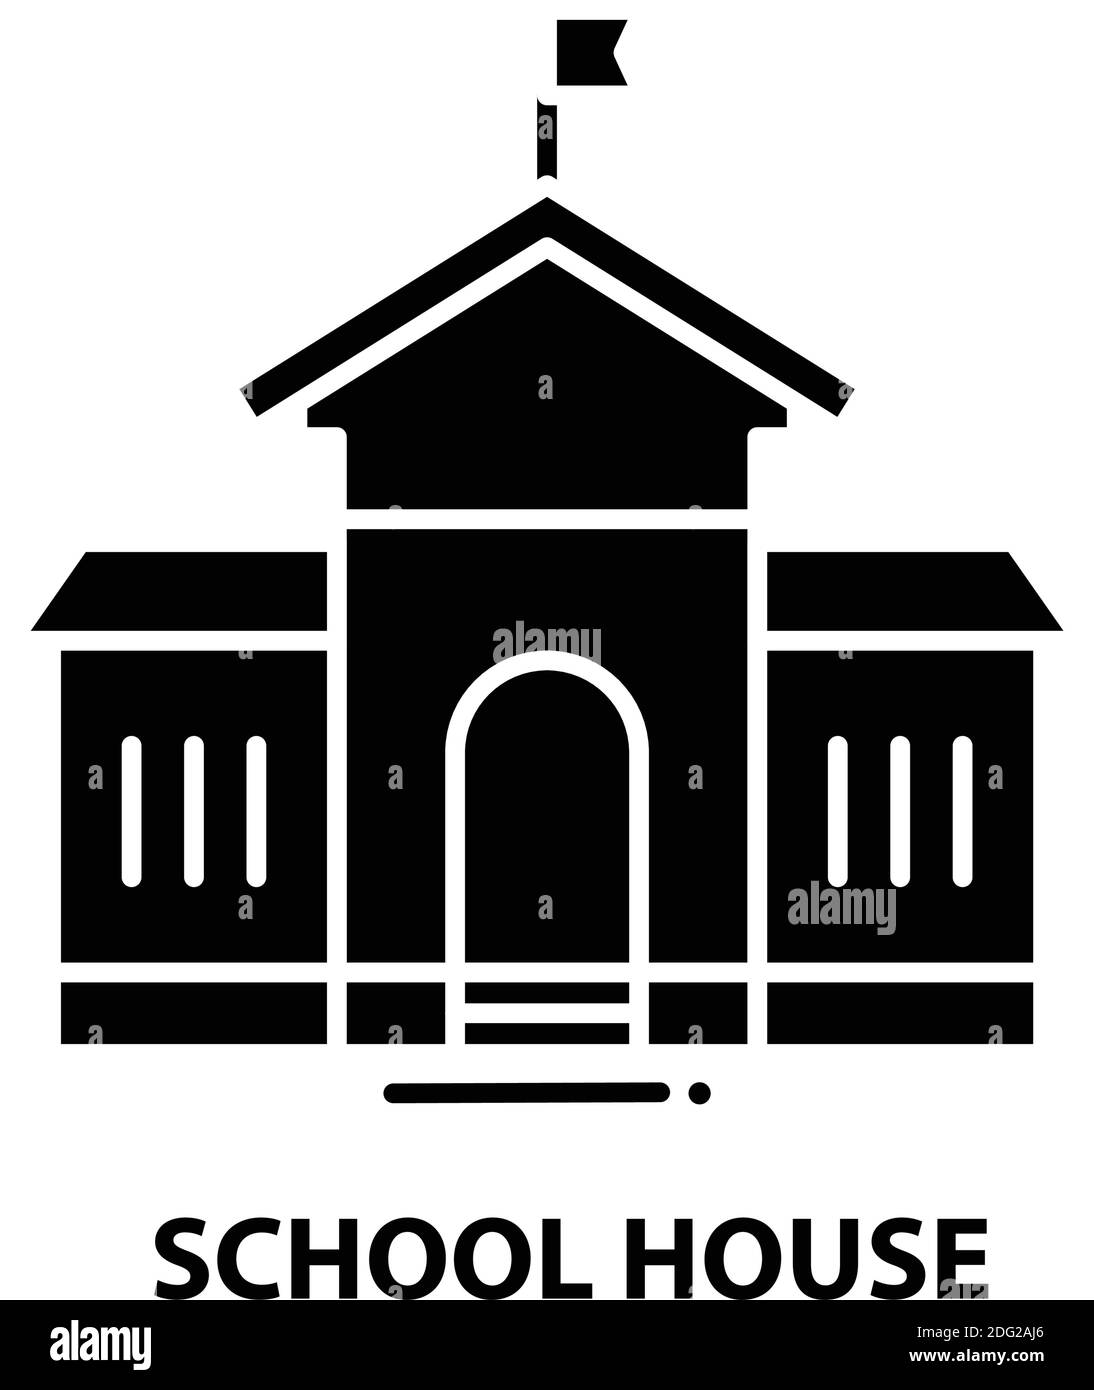 Schulhaussymbol, schwarzes Vektorzeichen mit editierbaren Konturen, Konzeptdarstellung Stock Vektor